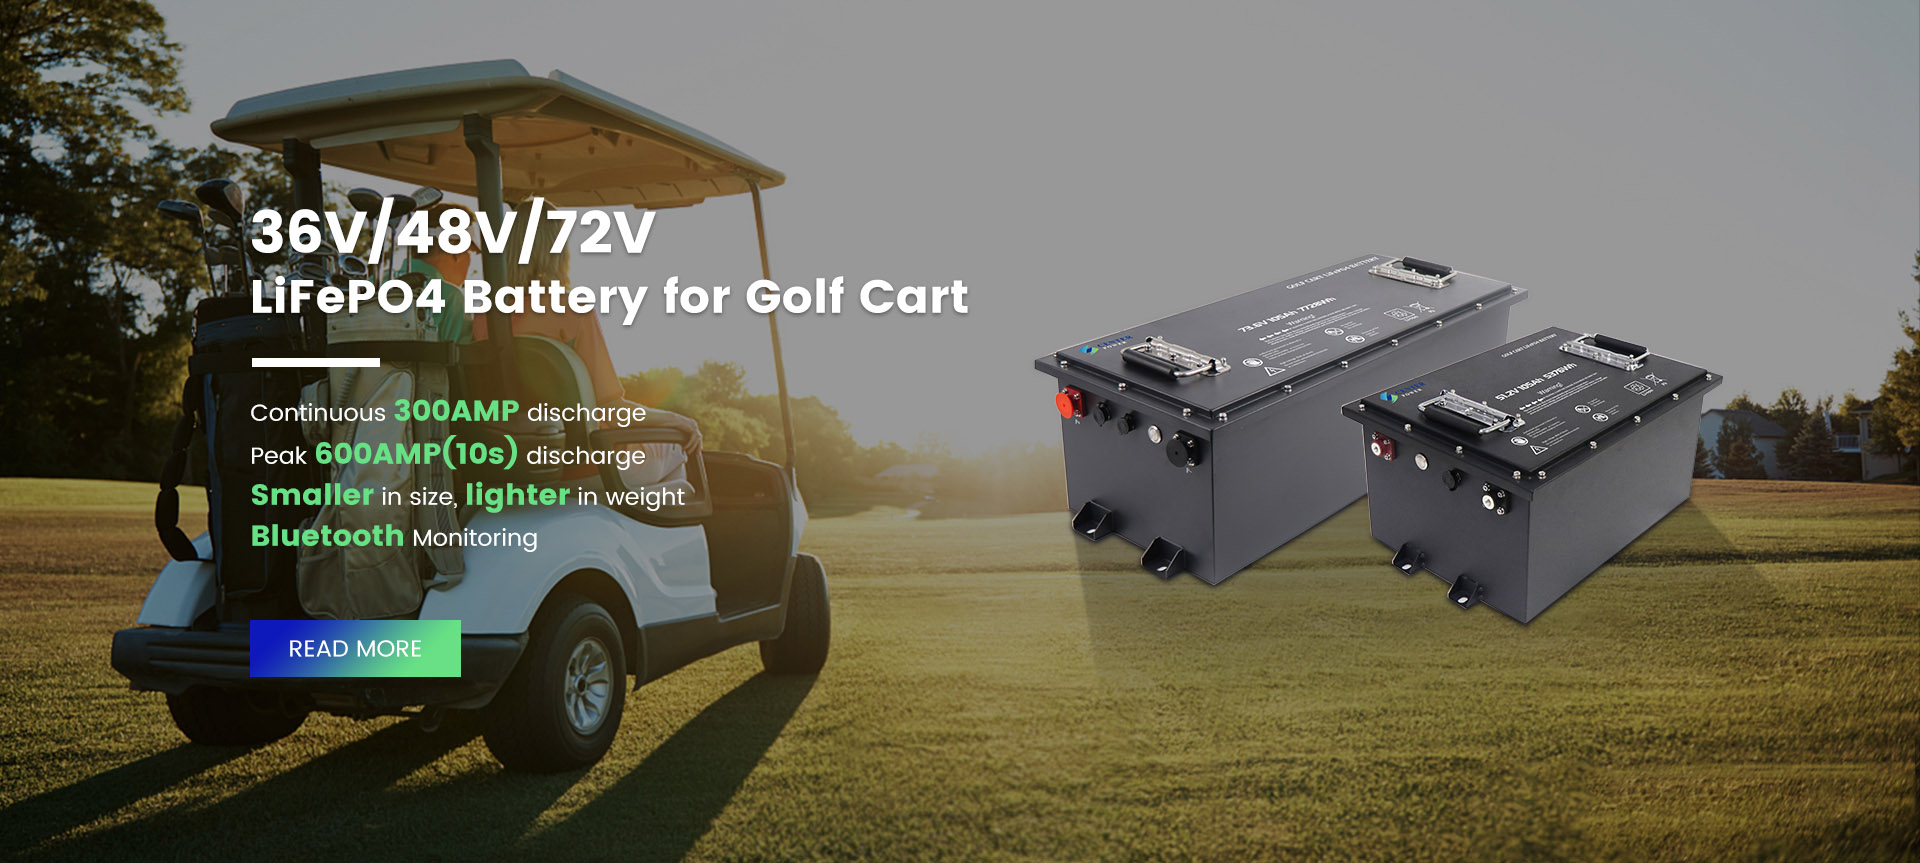 Batteria LifePo4 per carrello da golf